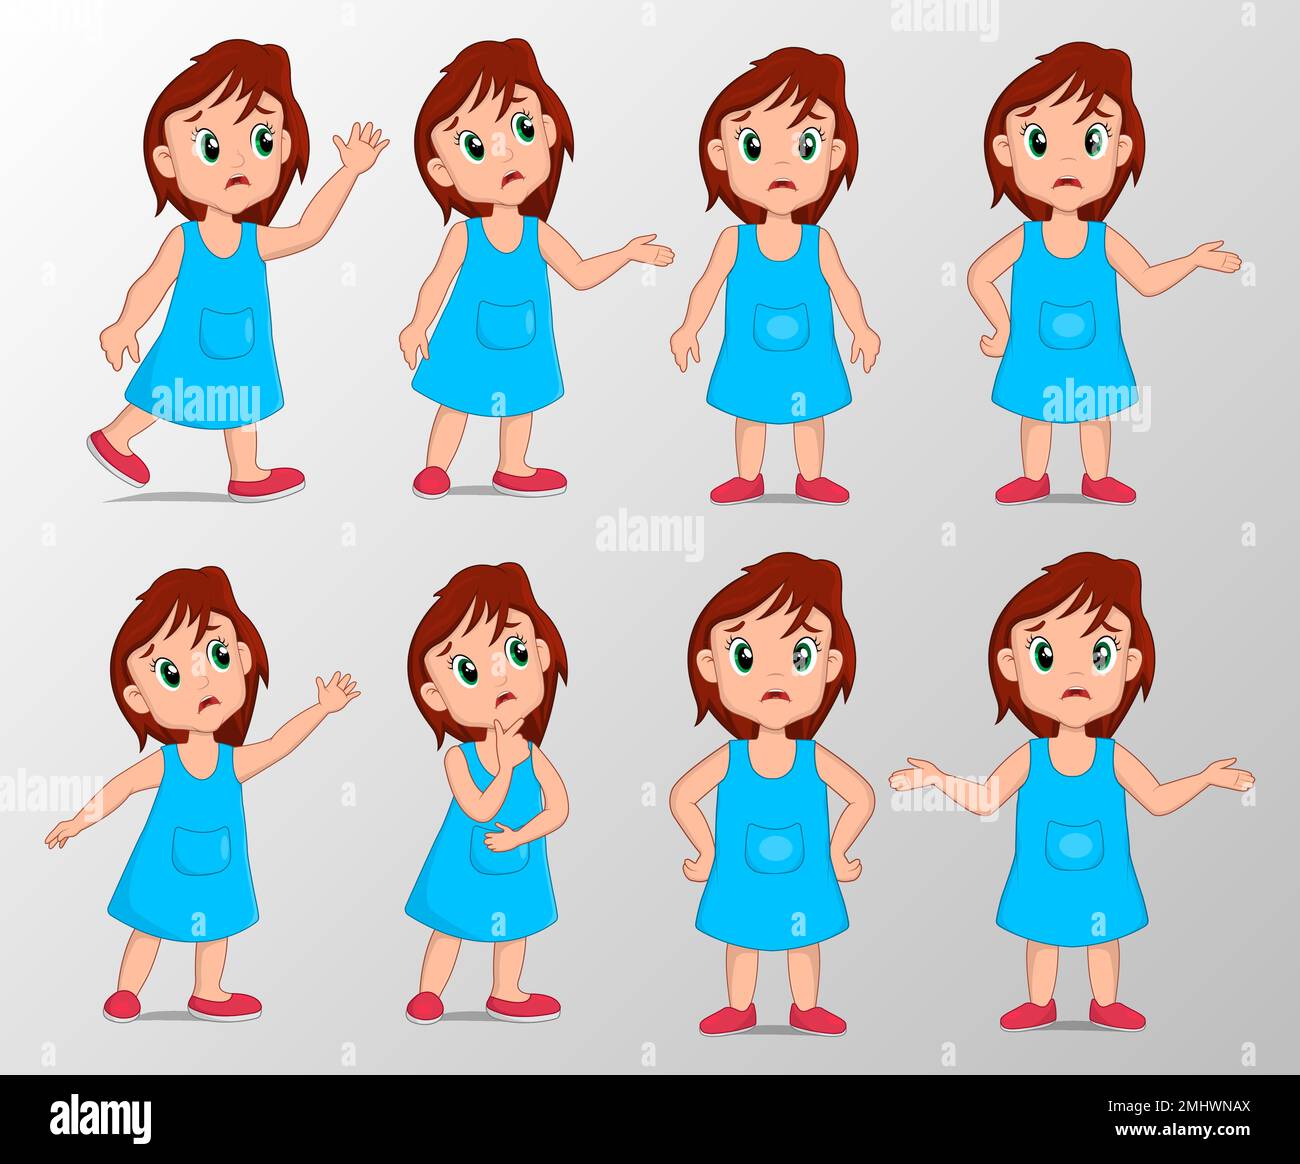 Jolie fille avec jeu d'expression de geste triste illustration vectorielle Illustration de Vecteur